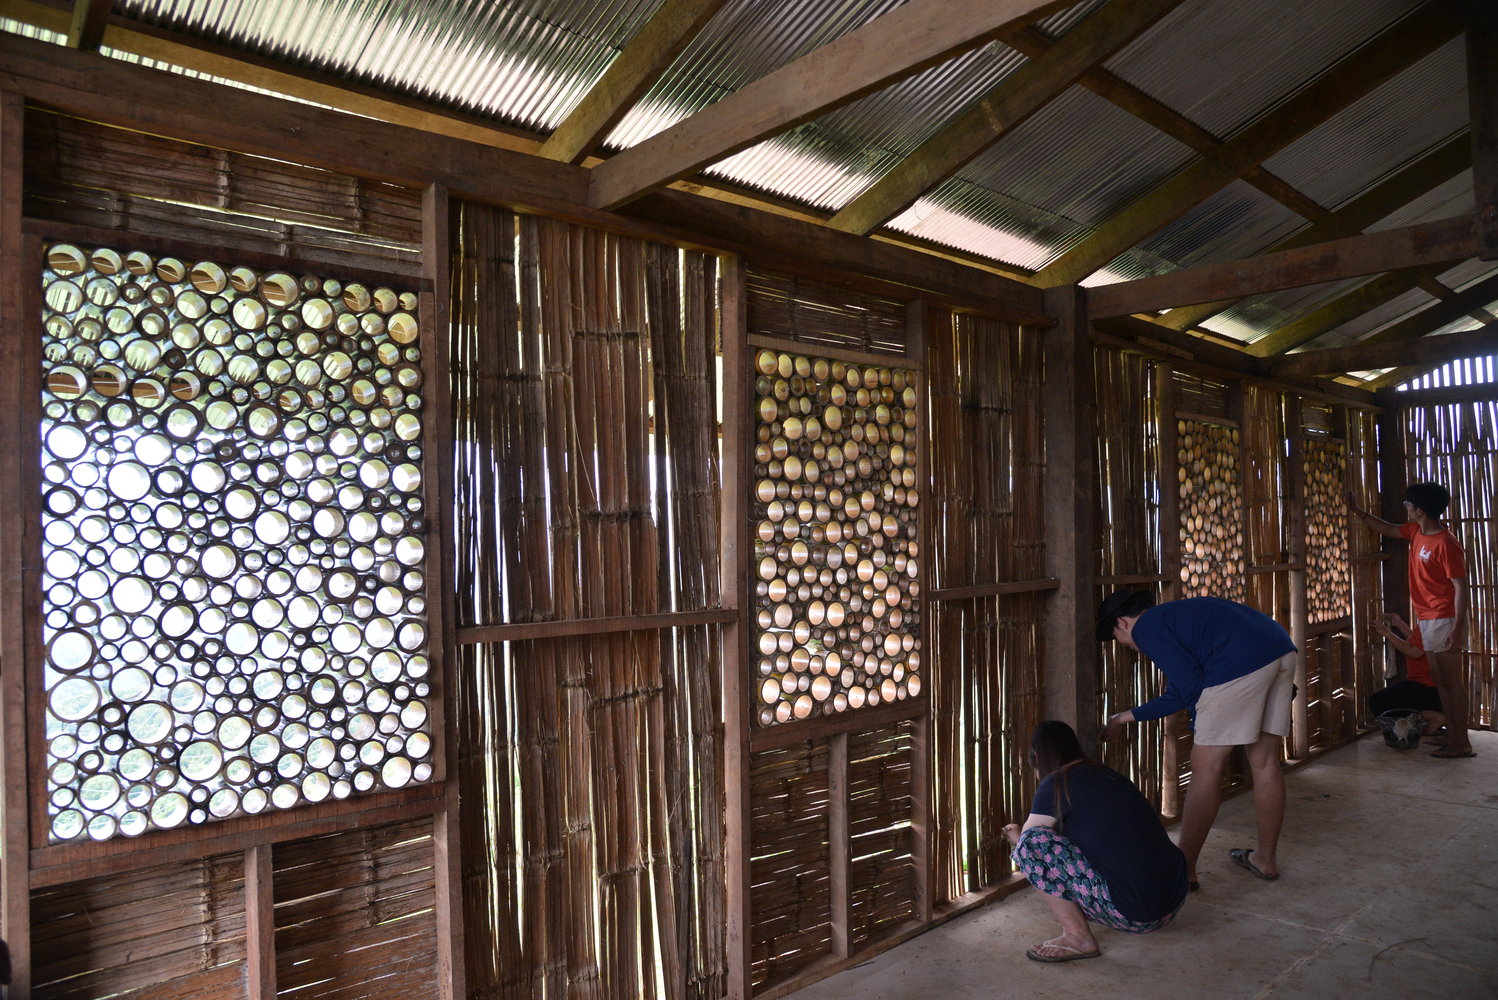 Mimarlık öğrencileri yerel malzemelerle öğrenci yurdu inşa etti